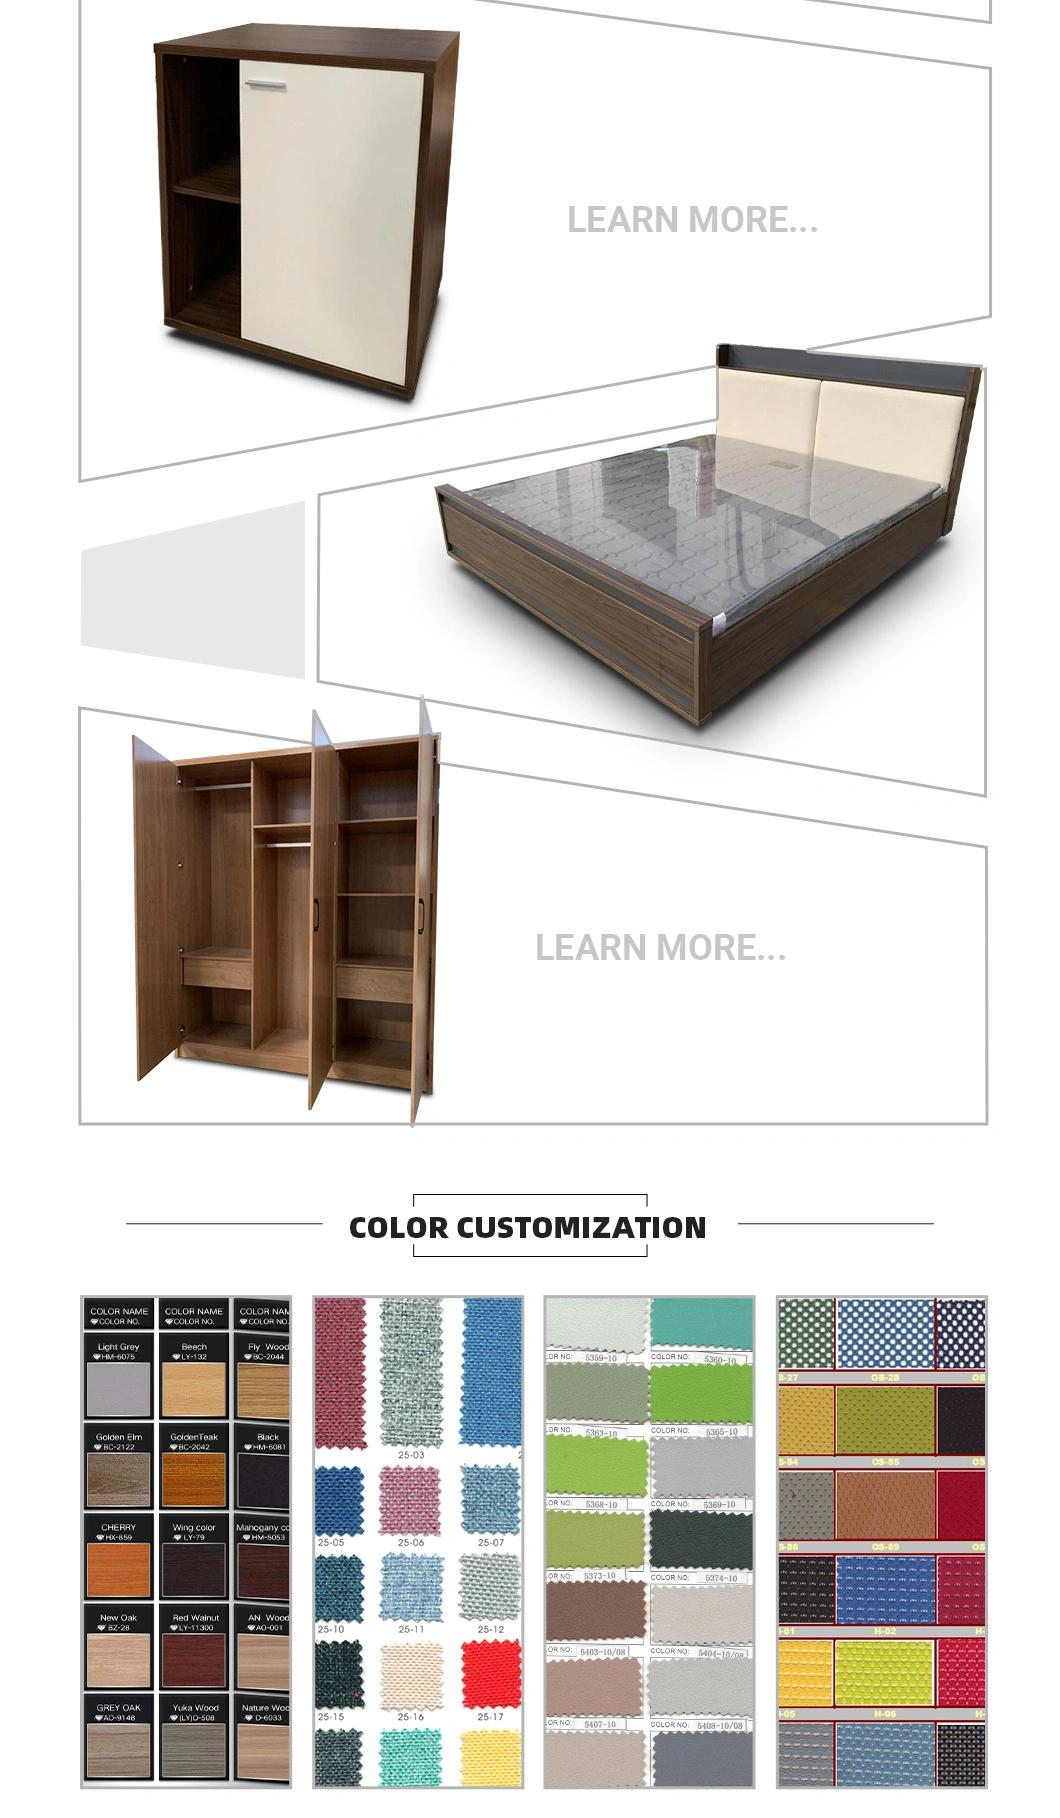 Popular Design Style Melamine Laminated Home Hotel Furniture Bed Bedroom Set